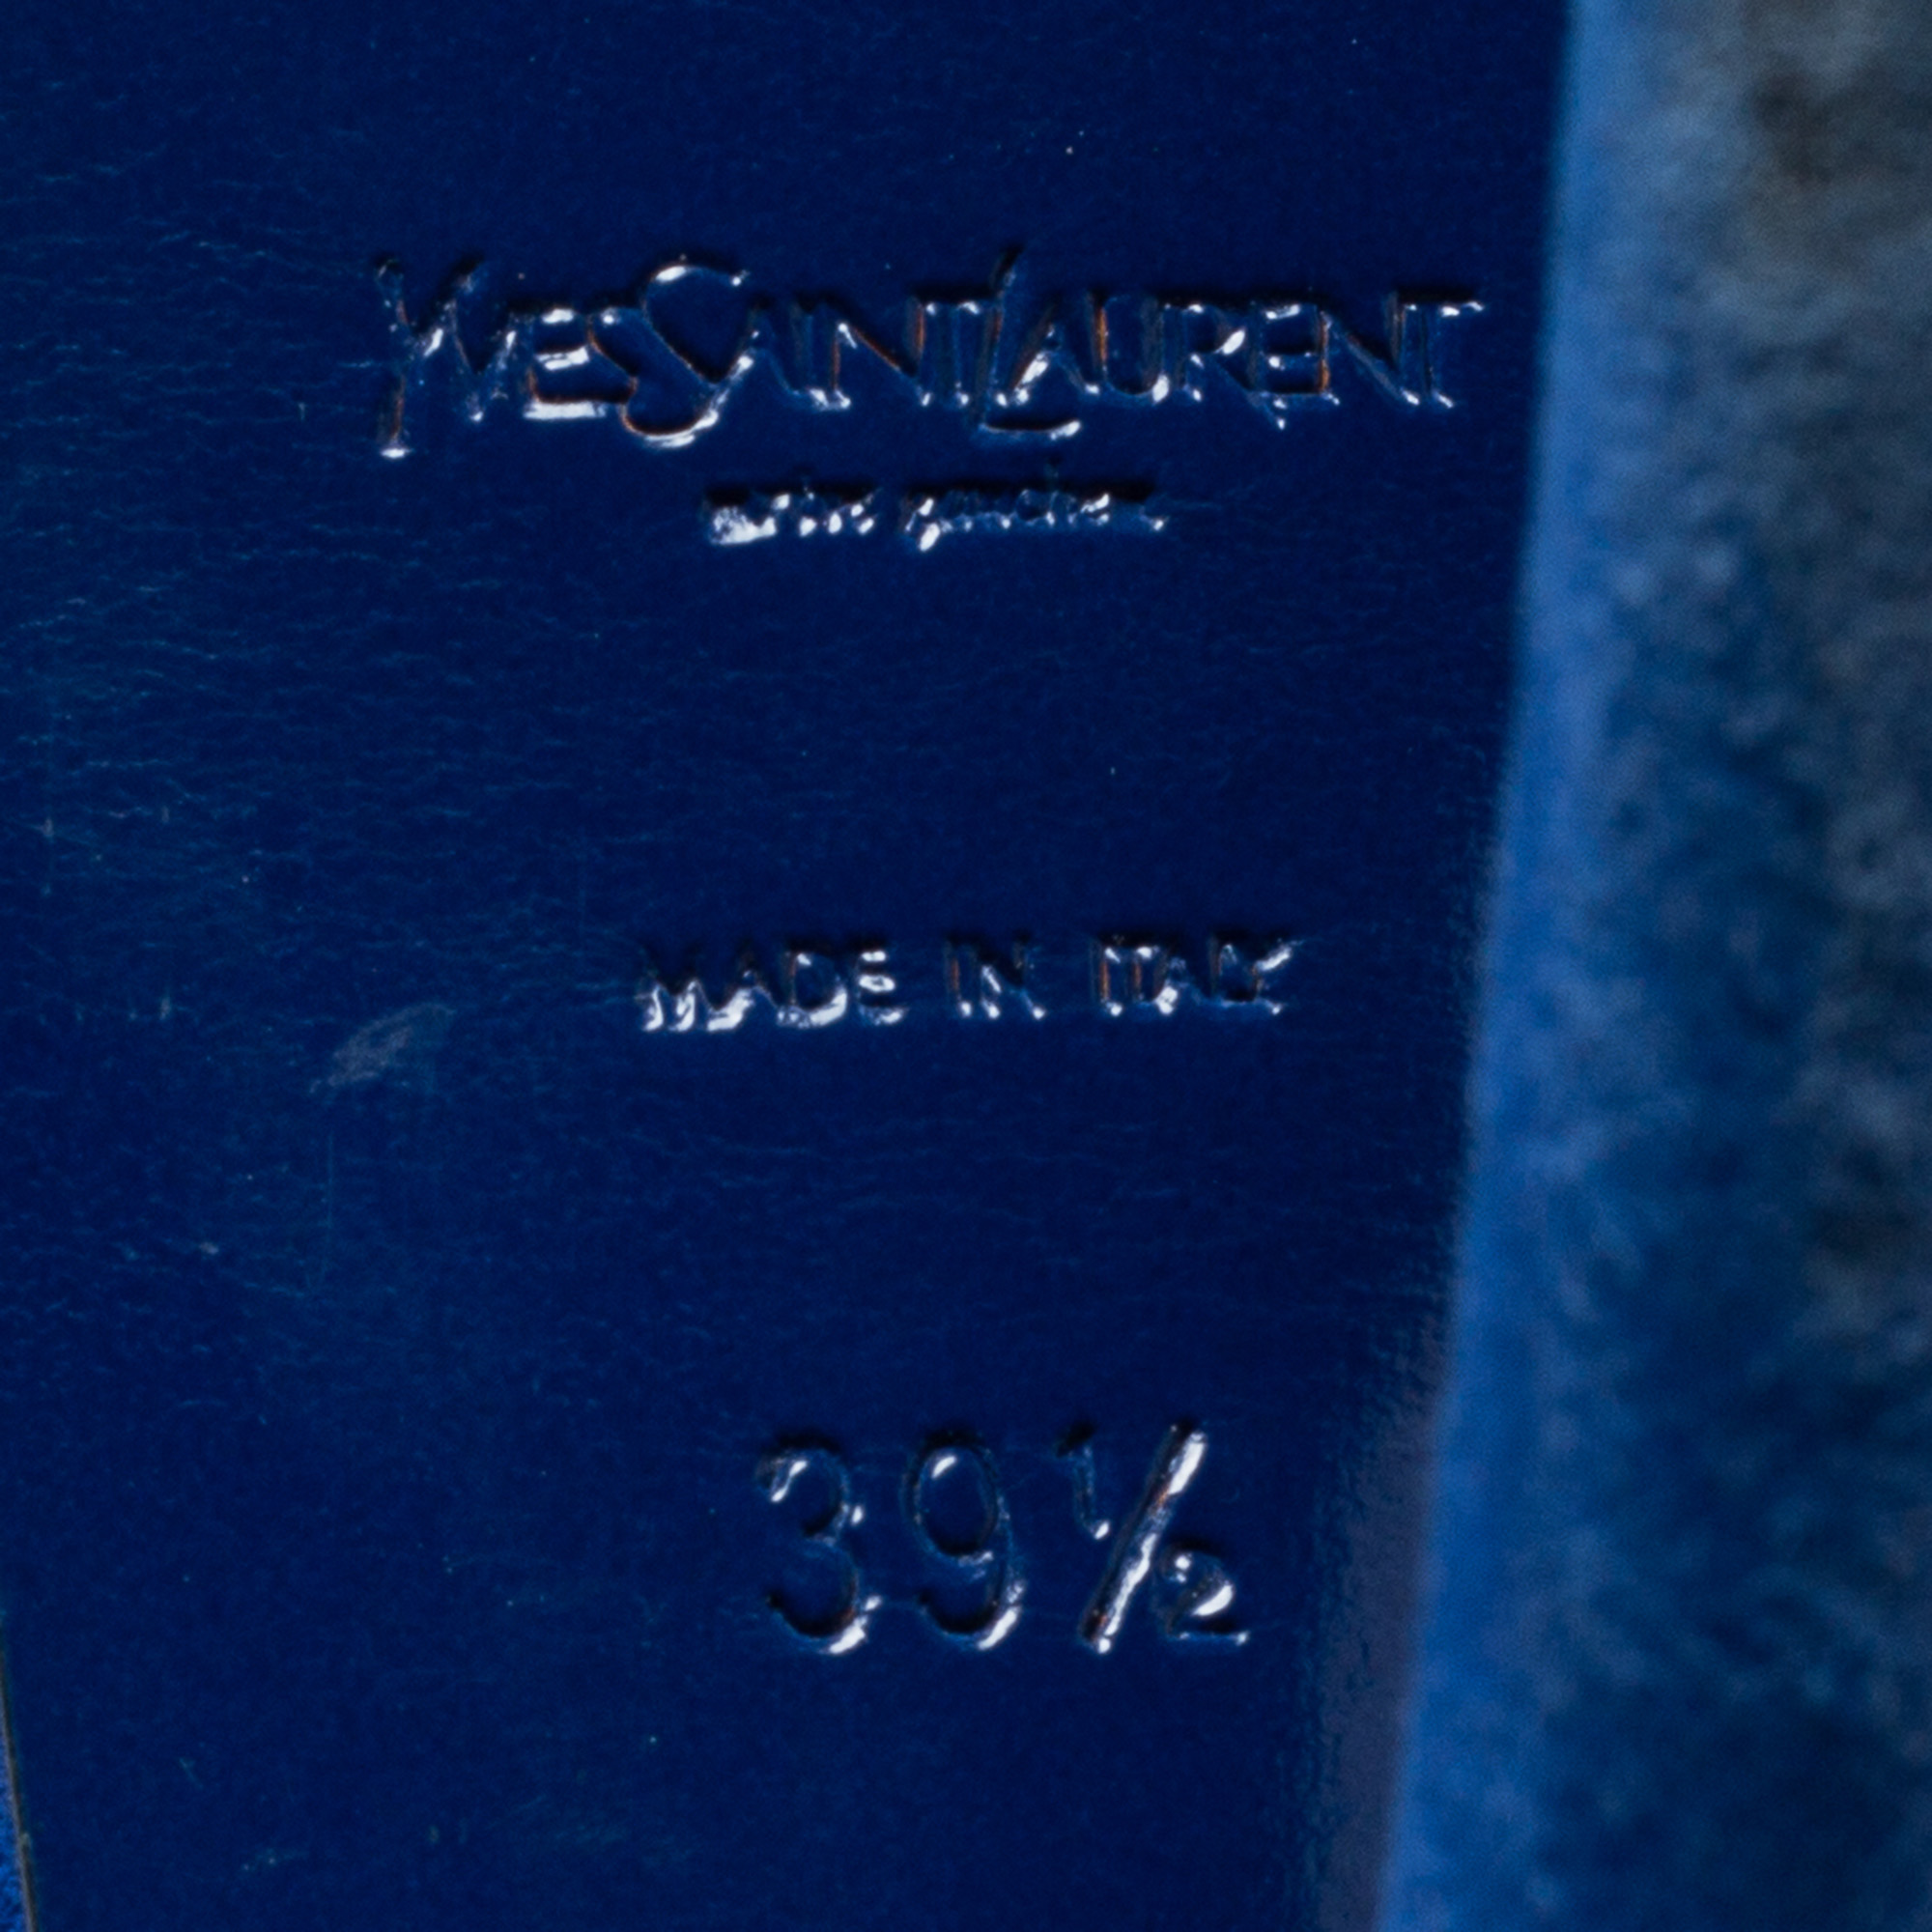 Yves Saint Laurent Navy Blue Suede Chain Detail Platform Sandals Size 39.5